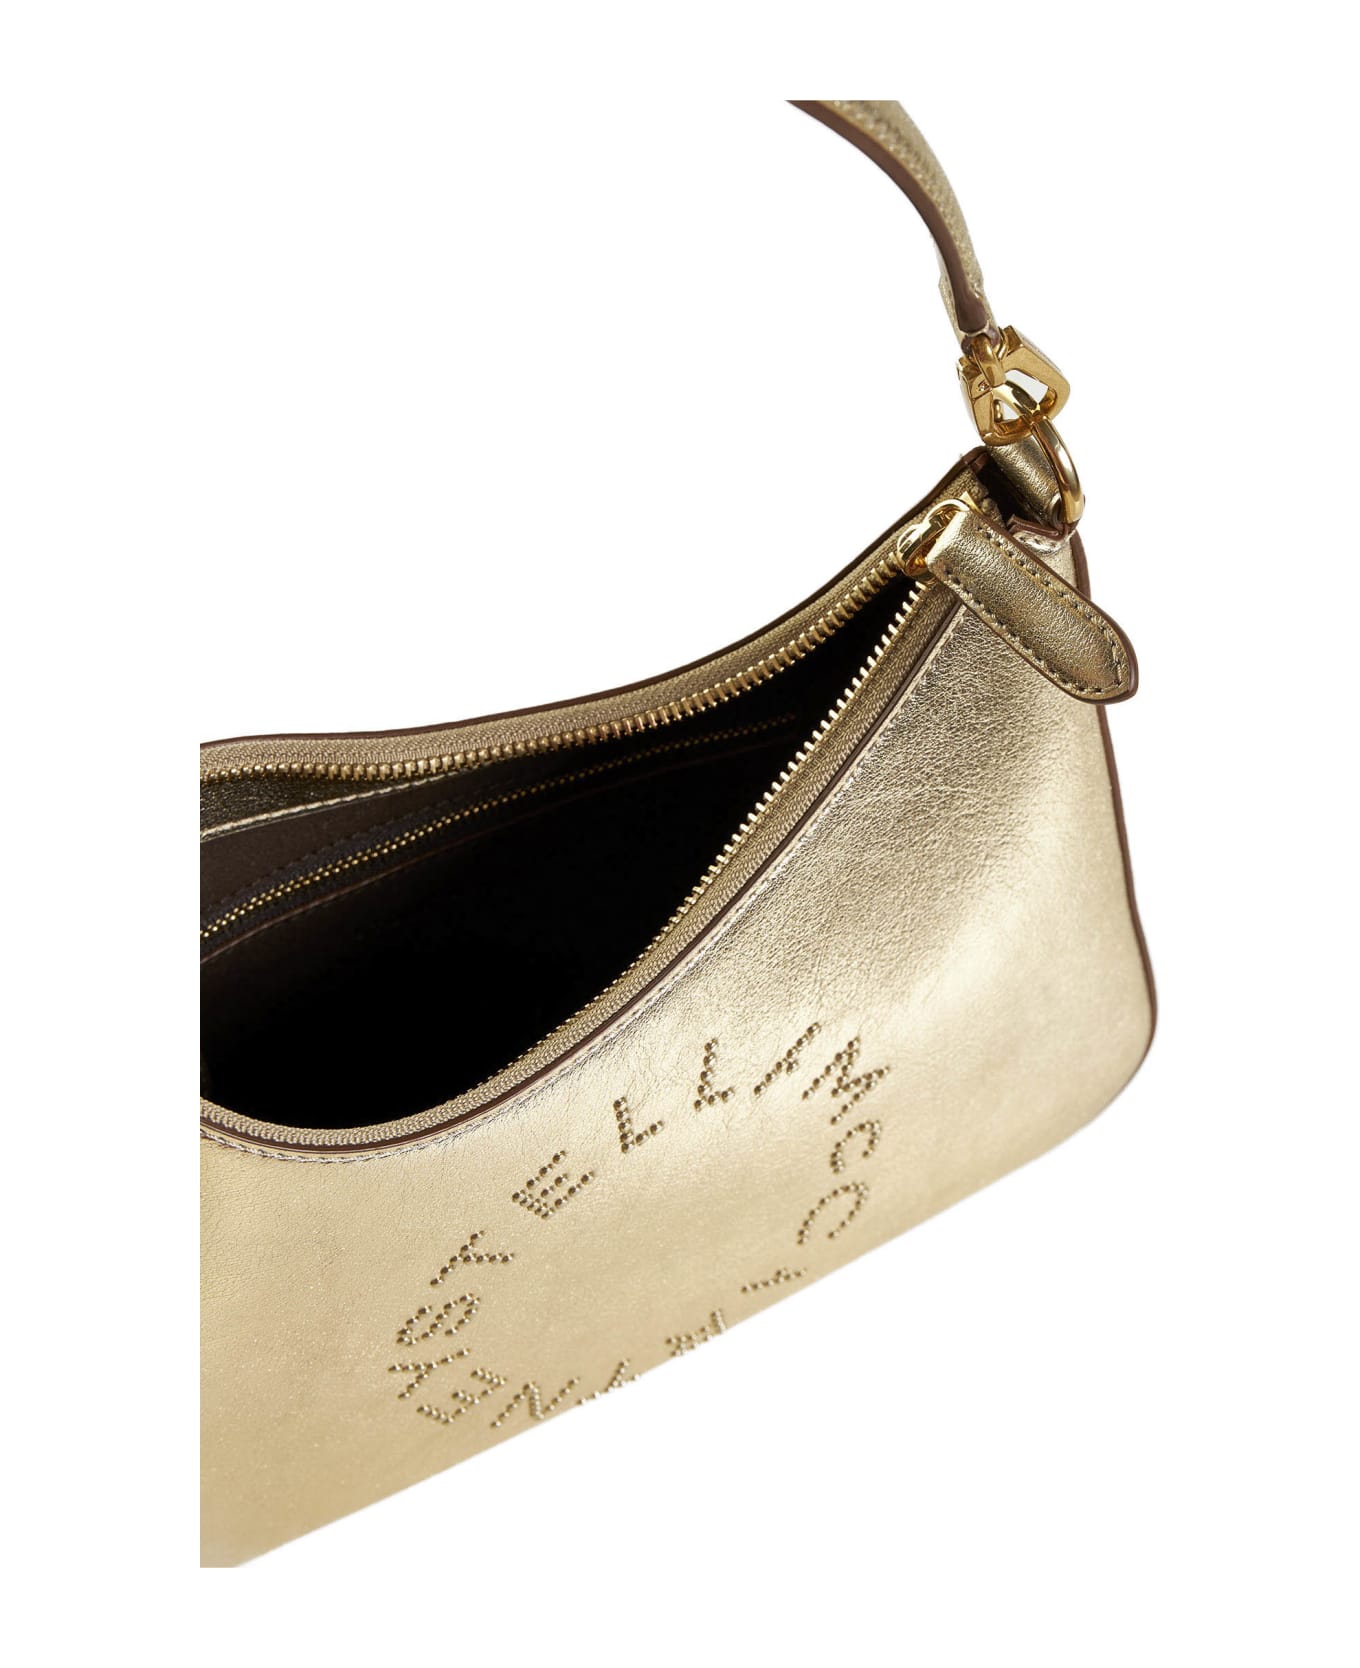 Stella McCartney Shoulder Bag - Light gold トートバッグ